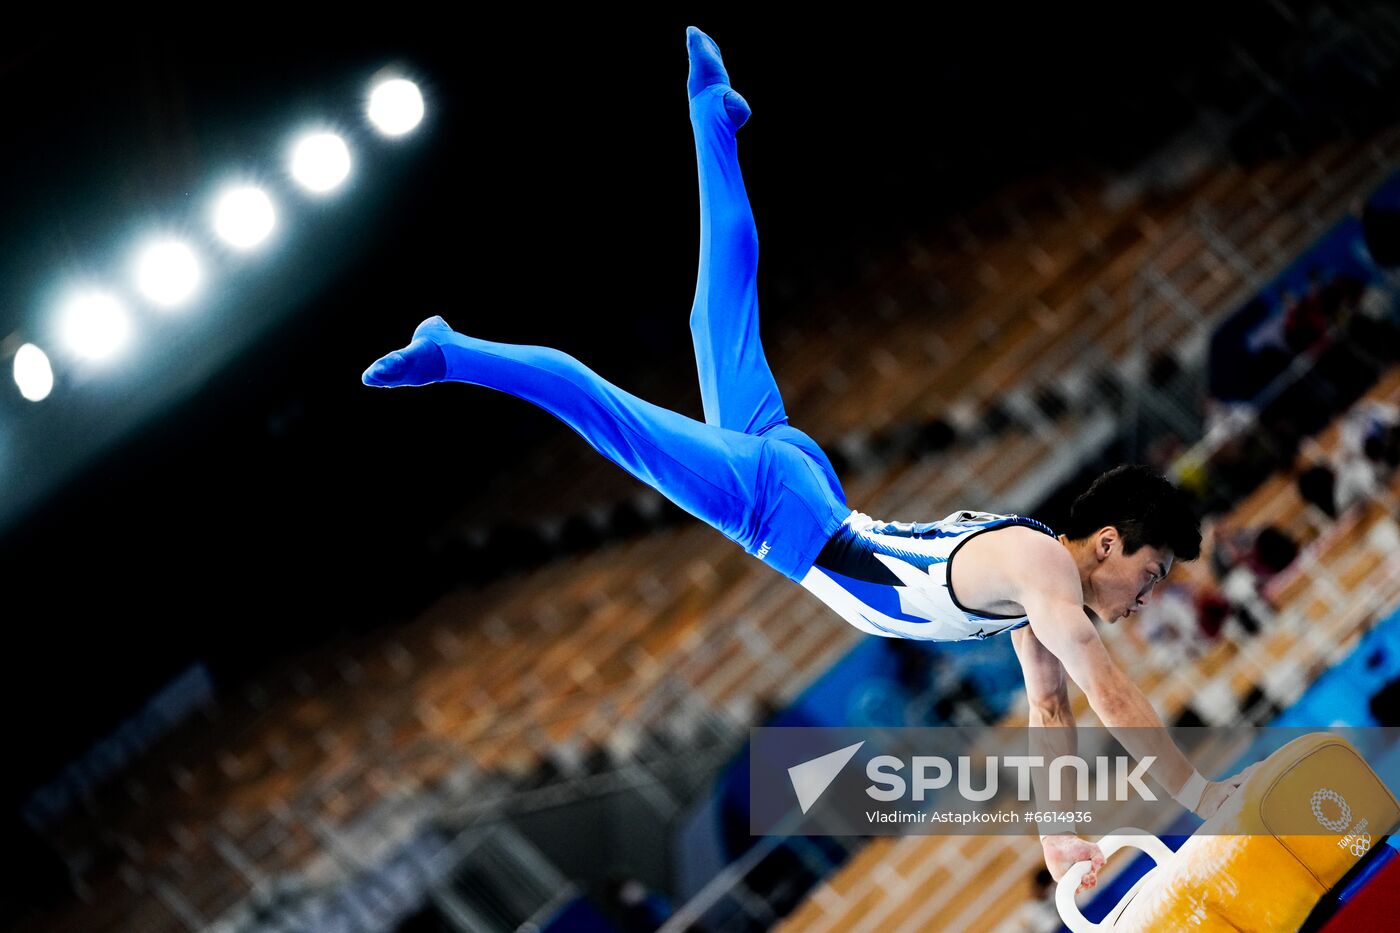 Japan Olympics 2020 Artistic Gymnastics Men Pommel Horse